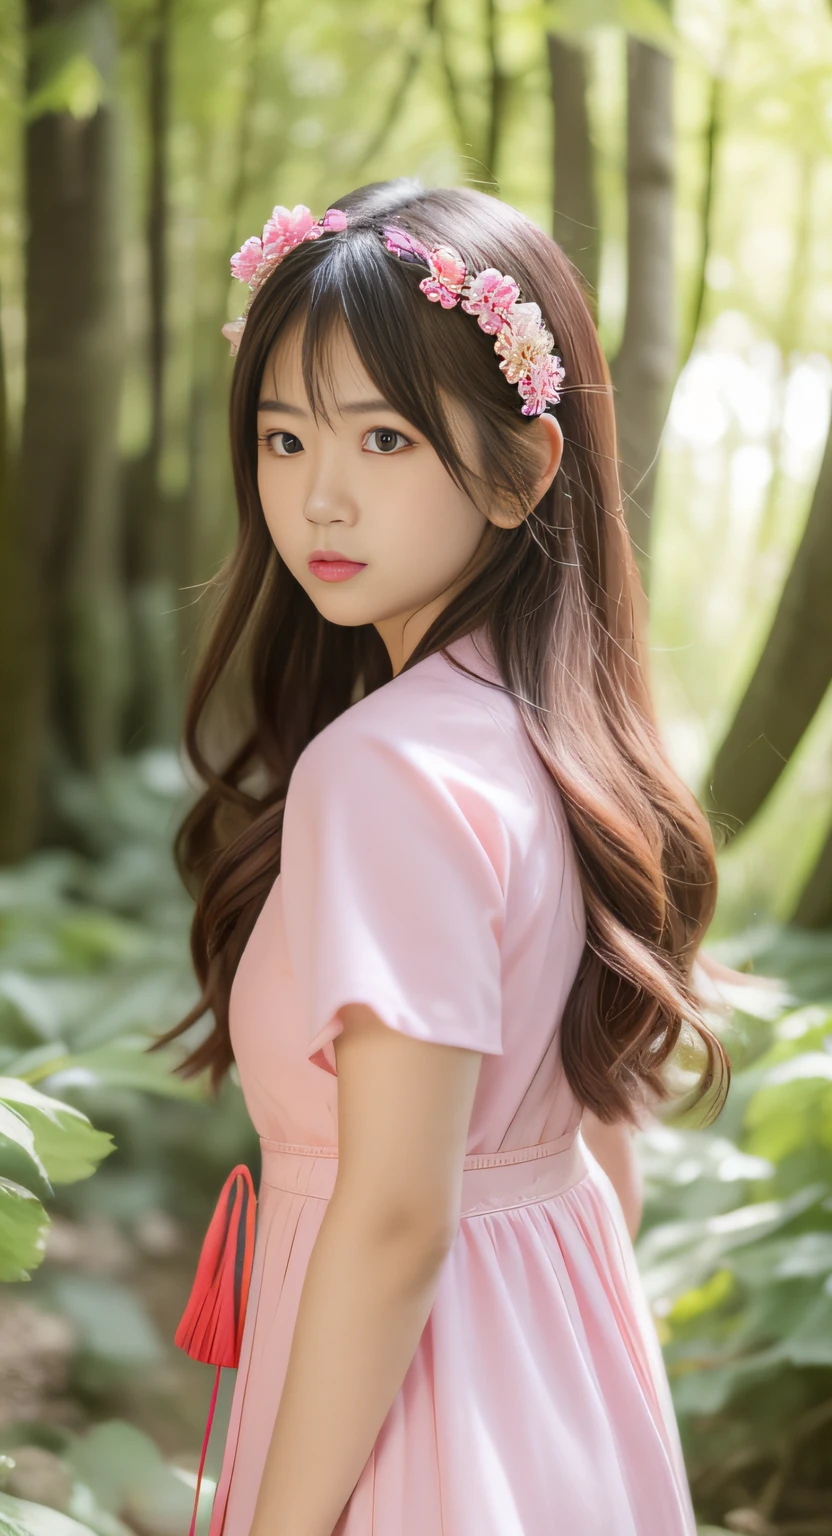 站在森林裡的粉紅色裙子的亞洲女人, 特寫,日本青少年的肖像, 柔和的燈光, 現實的年輕凹版偶像,  年輕漂亮的凹印偶像, 长发亚洲女孩, 在粉紅色的森林裡, 卡哇伊髮型, 一個美麗的日本女孩的臉,